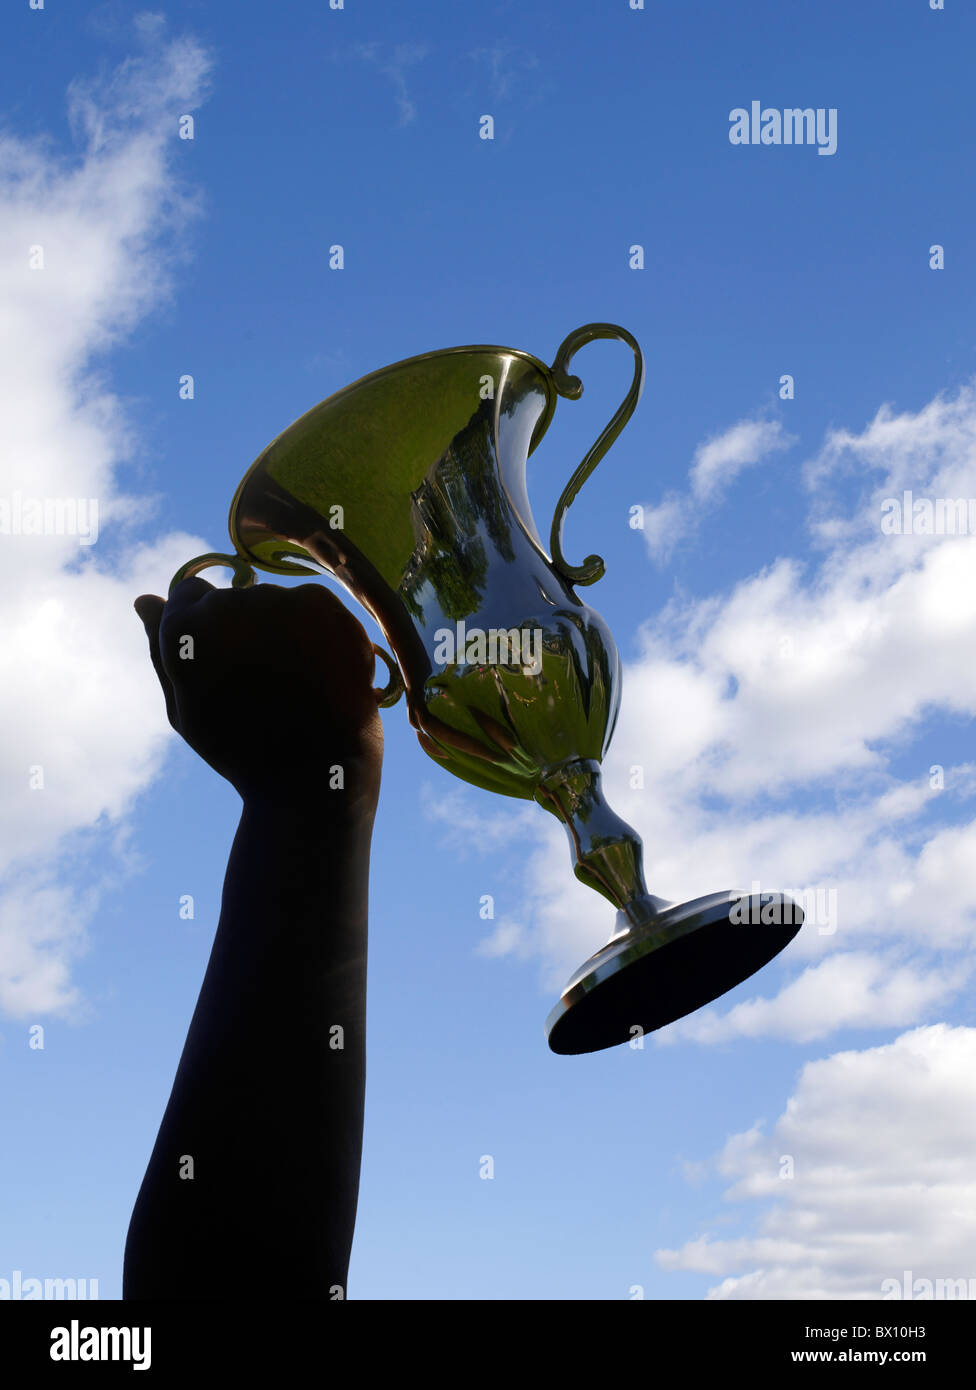 Une personne victorieuse tient une grande coupe de trophée brillante, silhouette sur un ciel bleu vif avec quelques nuages tortueux. Banque D'Images